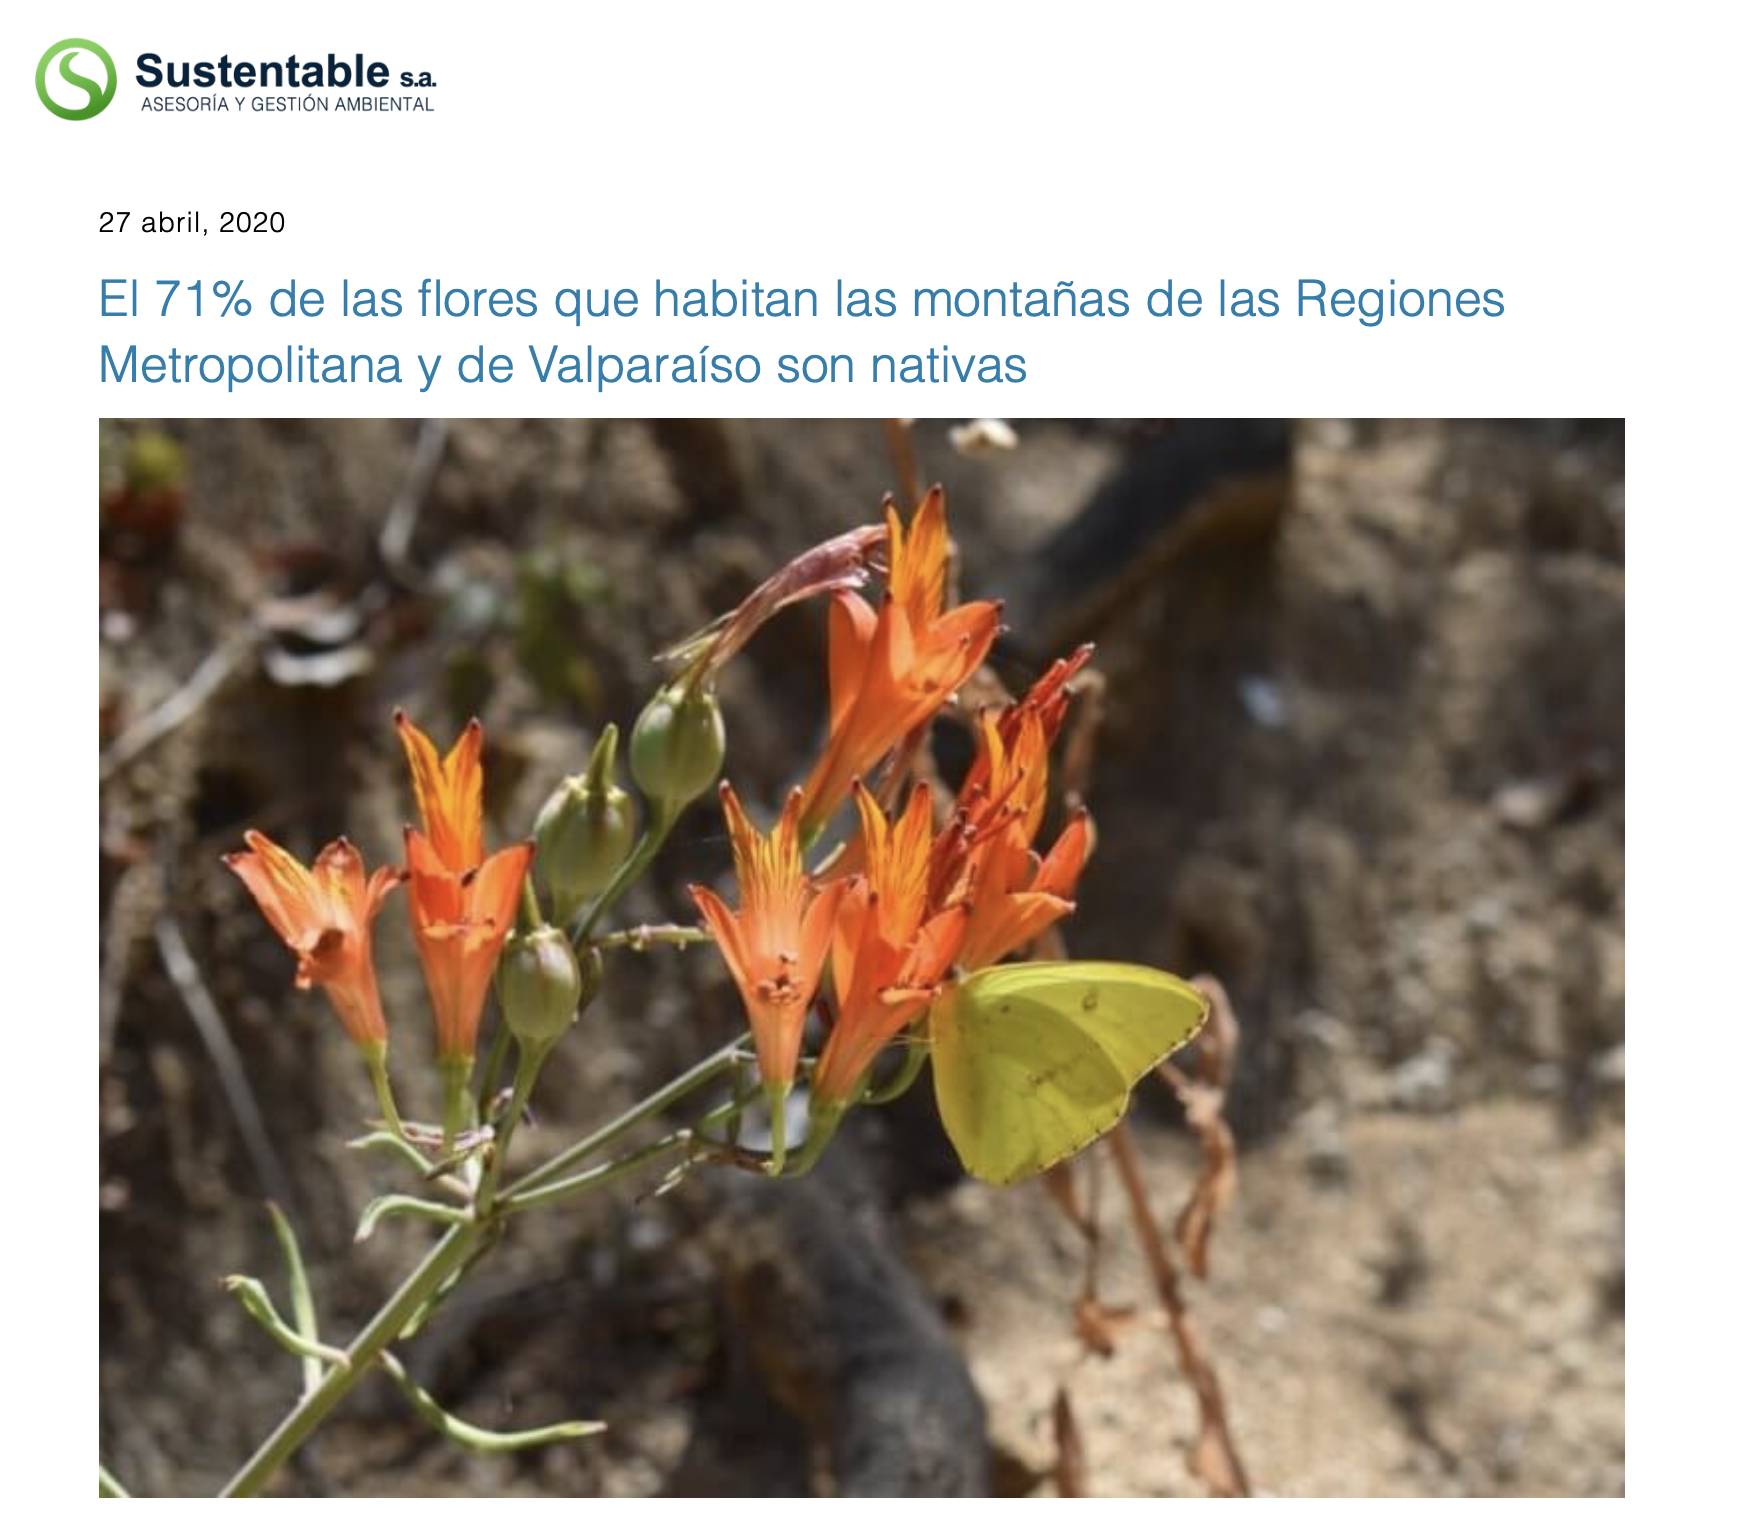 El 71% de las flores que habitan las montañas de las Regiones Metropolitana y de Valparaíso son nativas